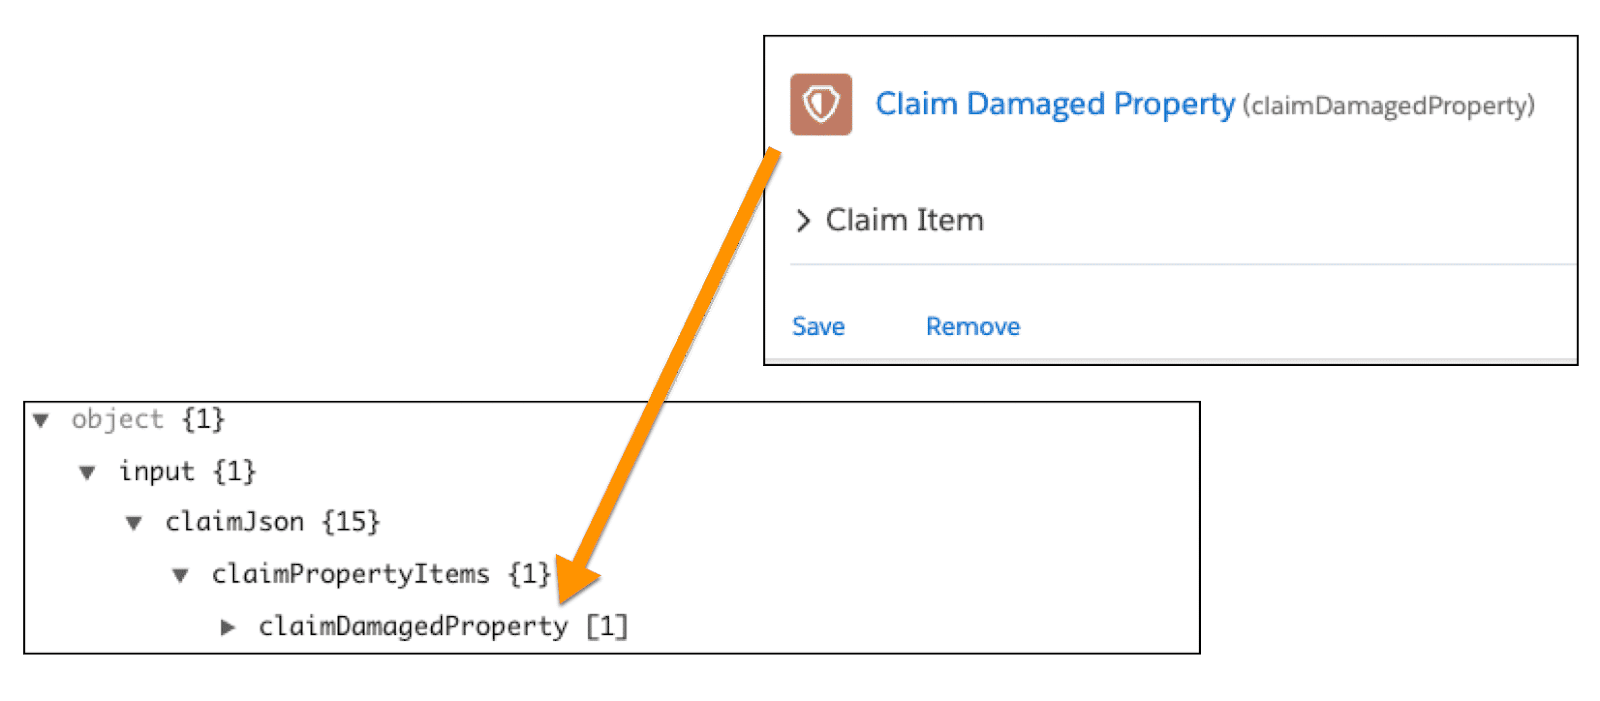 Claim Damaged Property spec maps to the claimDamagedProperty JSON array.